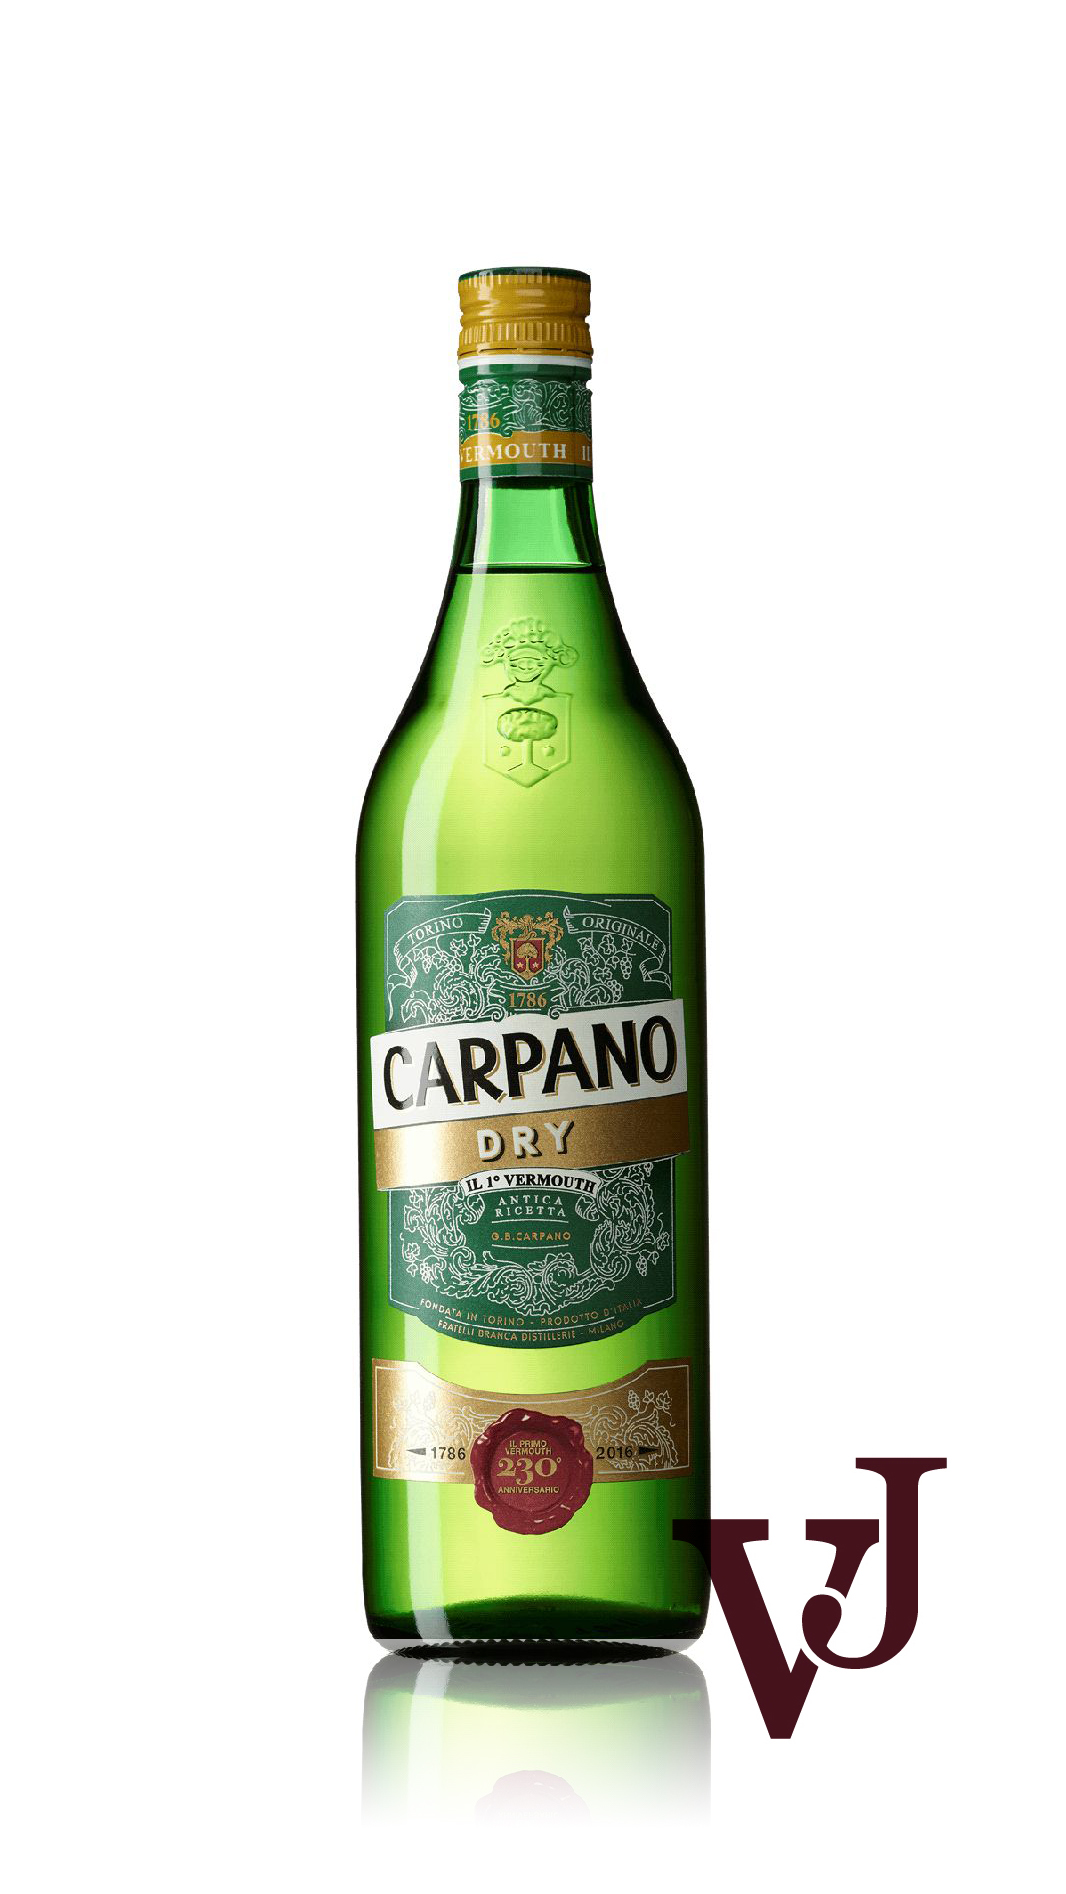 Övrigt vin - Carpano Dry artikel nummer 7148701 från producenten Fratelli Branca från området Italien